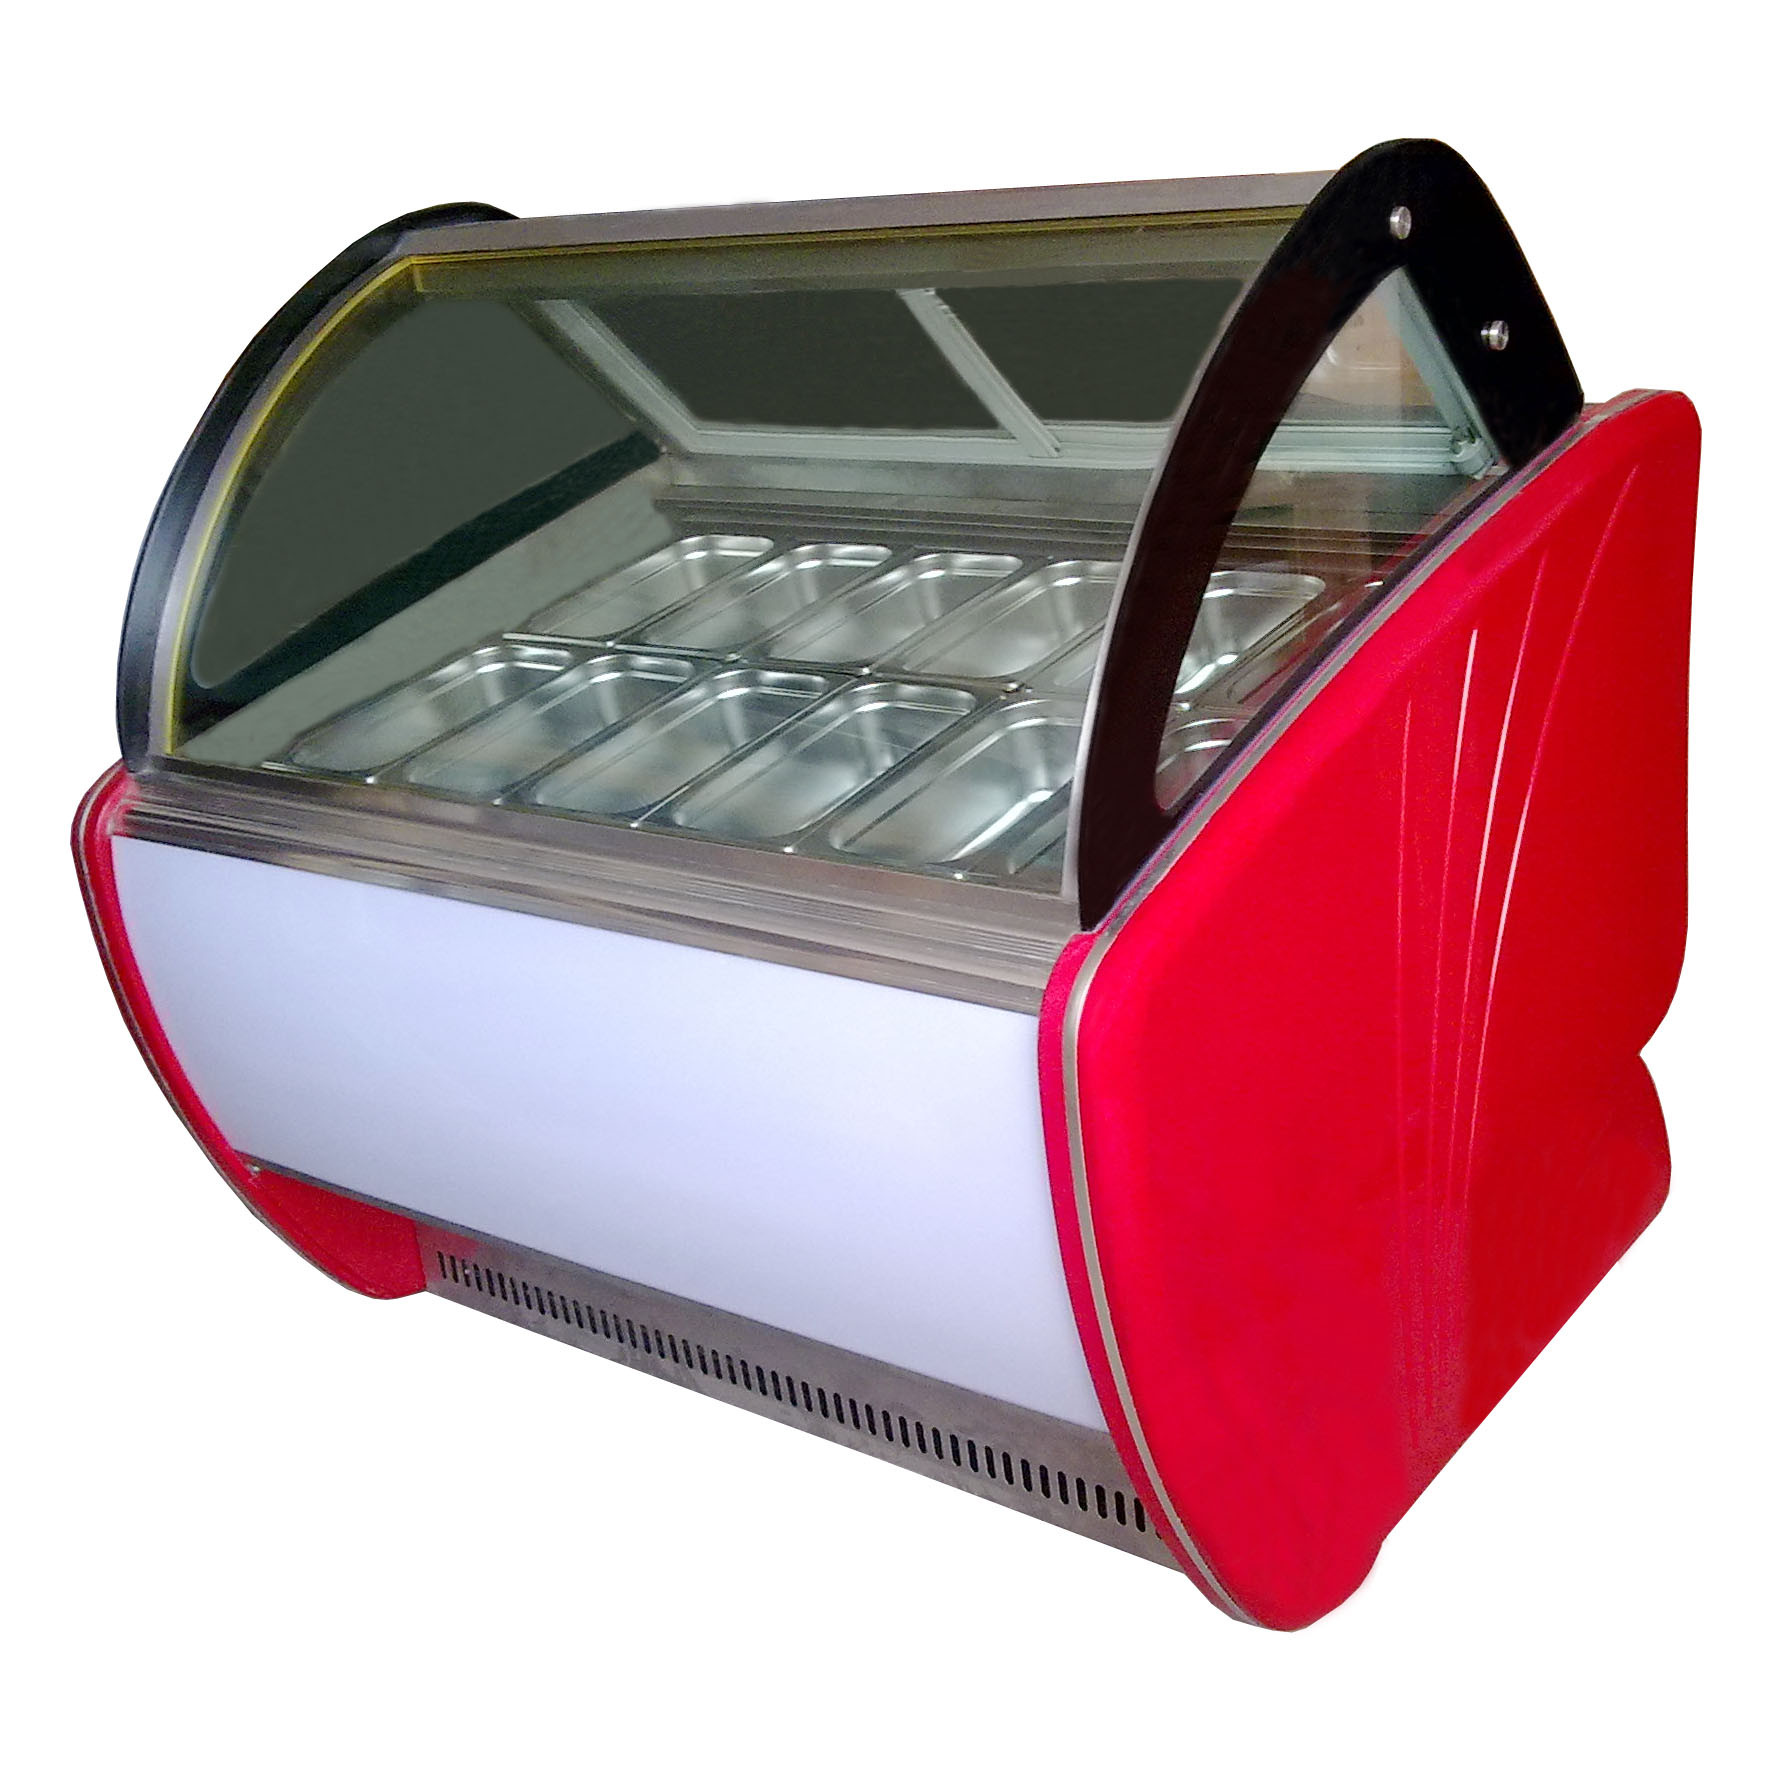 Geladeiras expositoras de sorvete com economia de energia com 20 recipientes -22 - 18 °C OEM